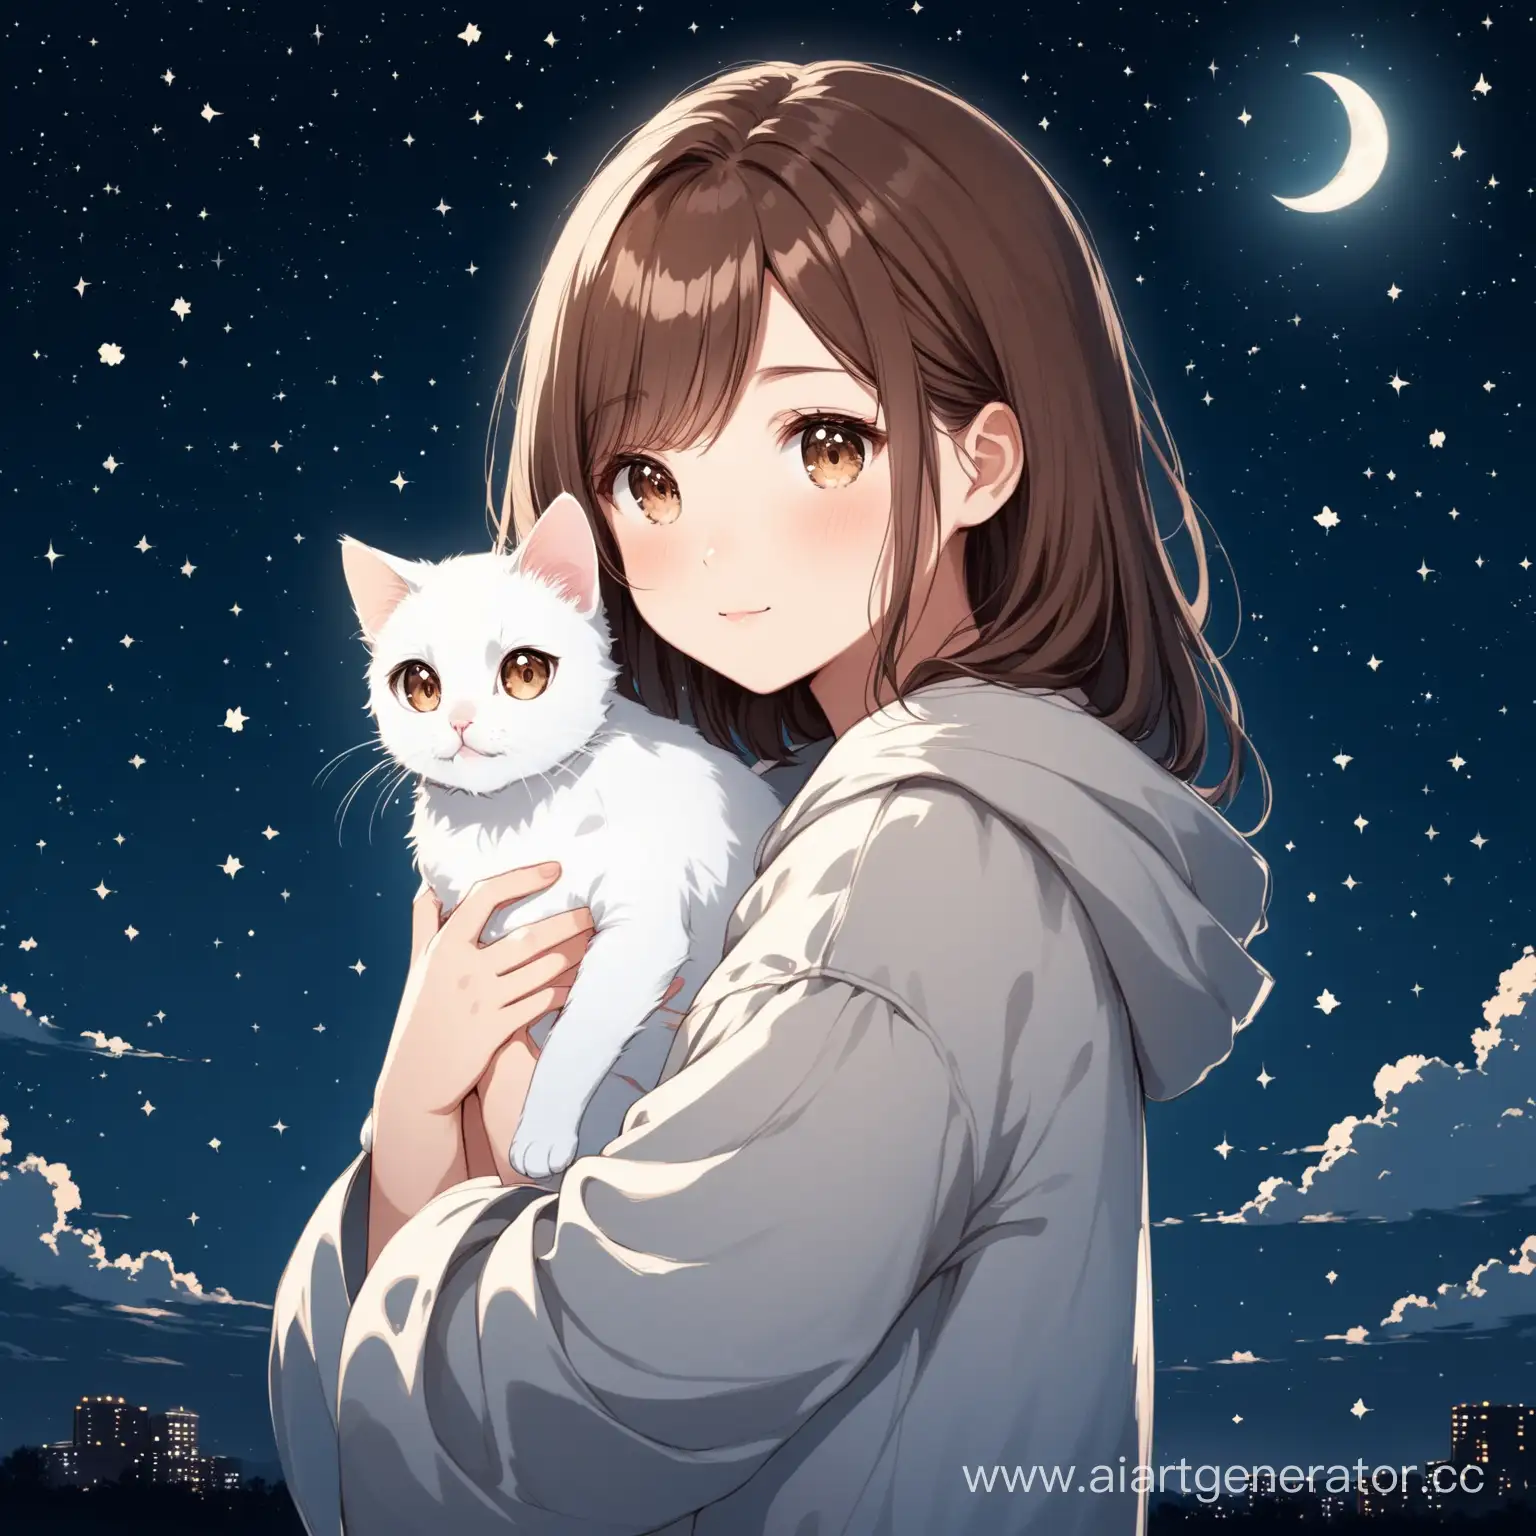 Girl-Holding-White-Cat-under-Starry-Night-Sky